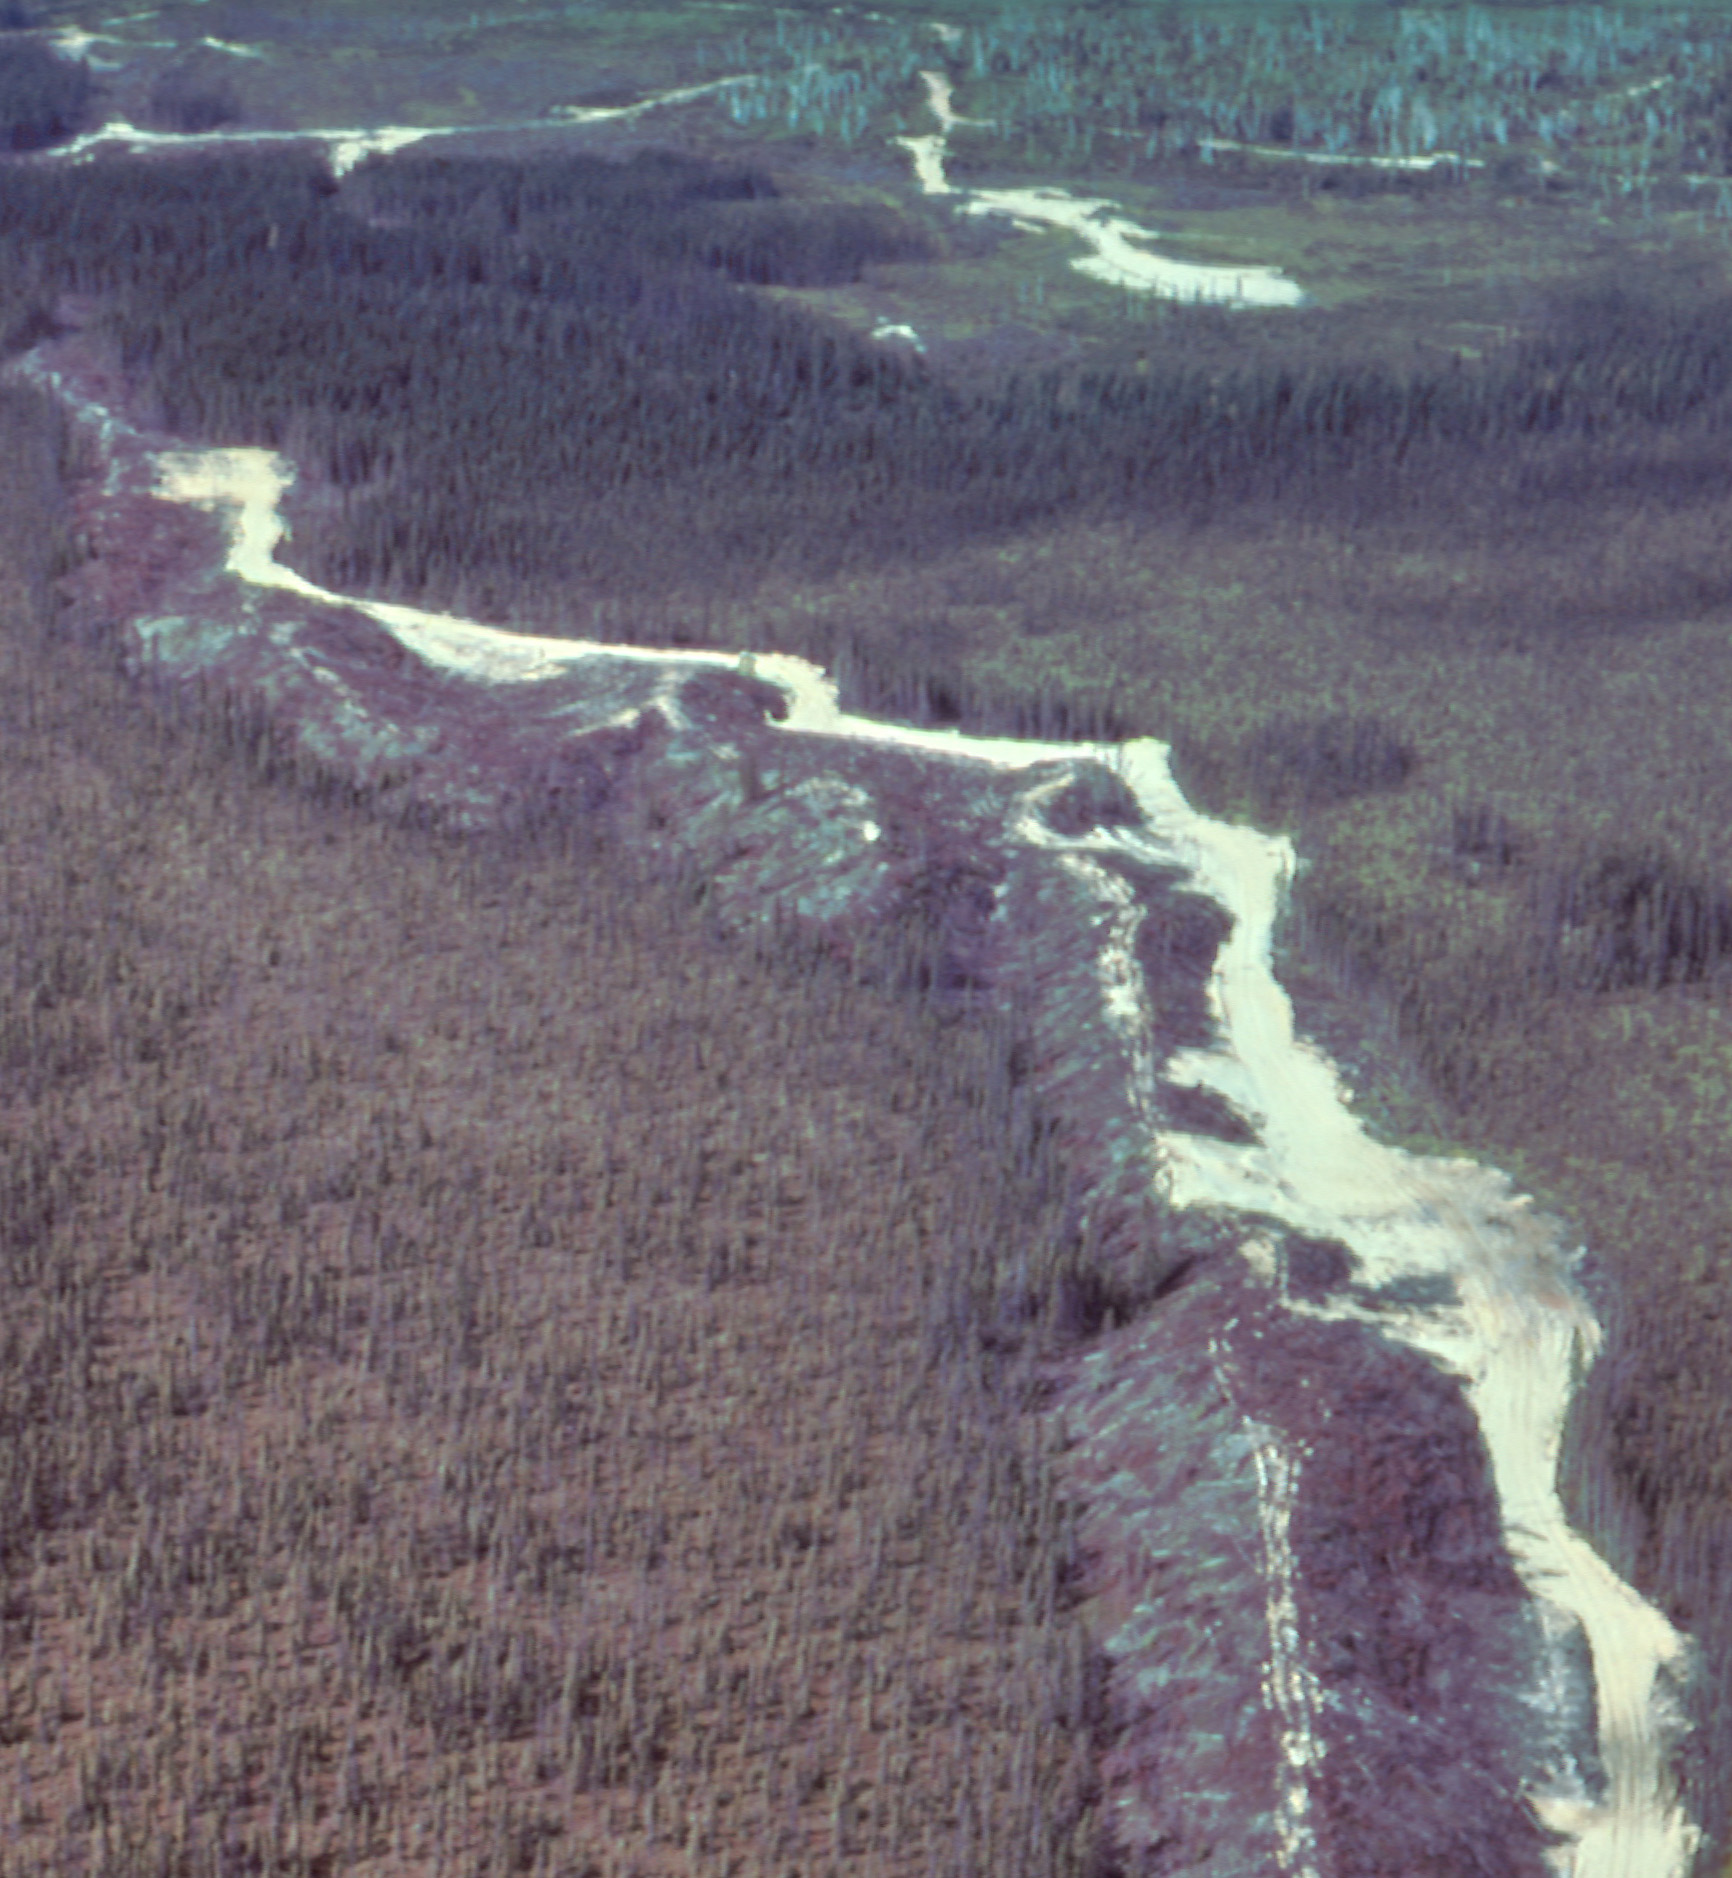 图5:南部的一个蛇形丘Timmins,安大略,被用作道路建筑材料的来源。raybet11图片由凸轮贝克,以前的安大略地质调查。raybet11